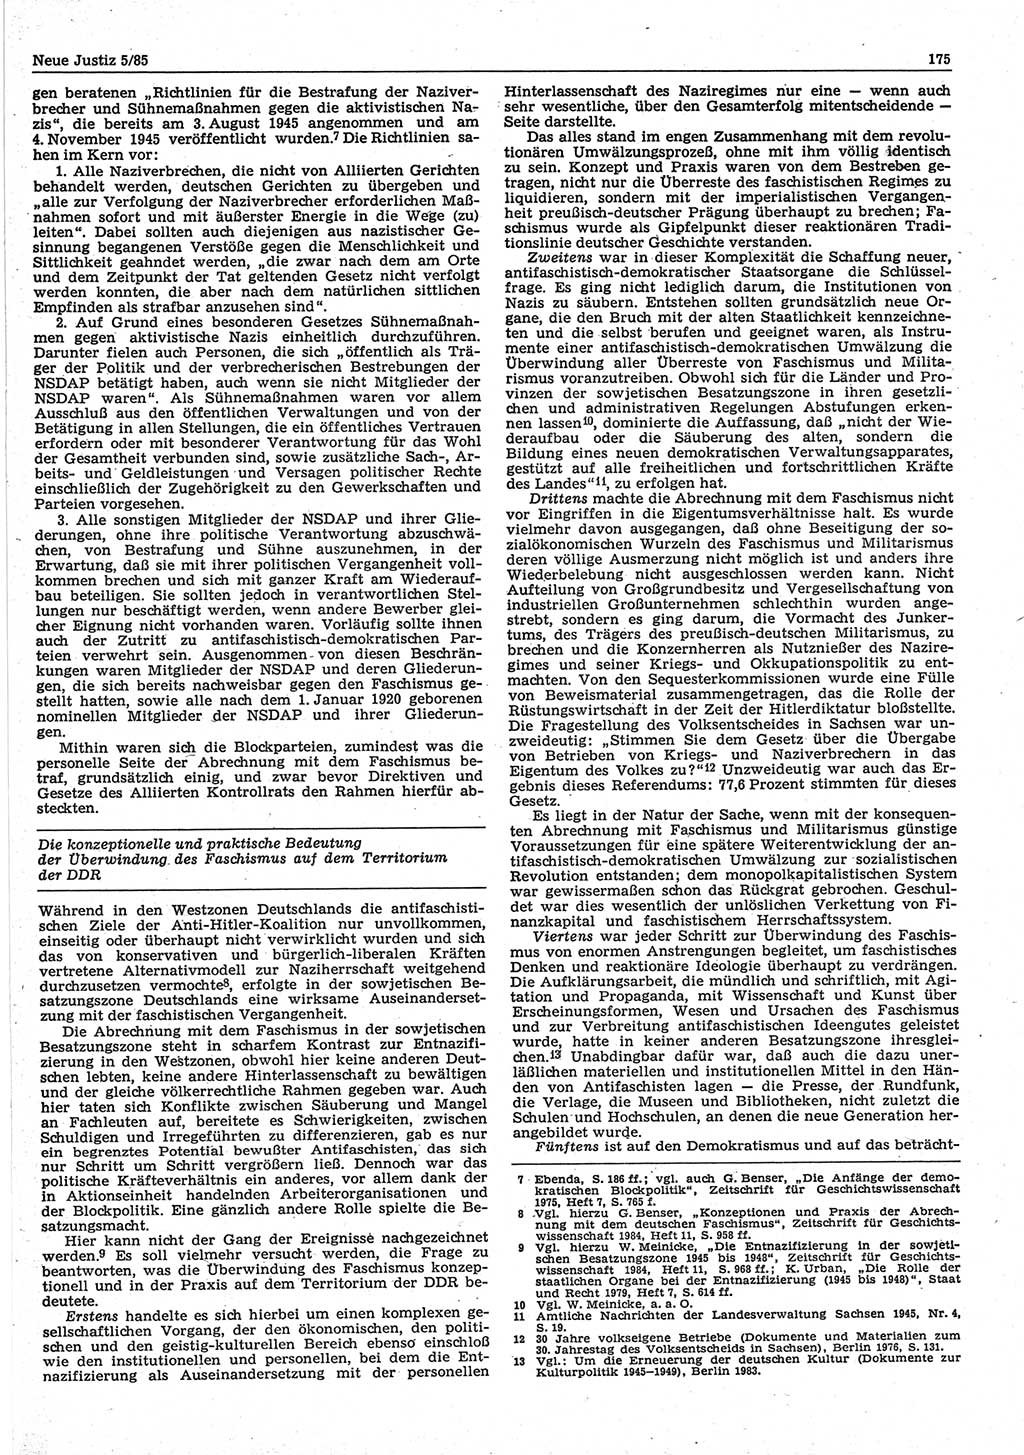 Neue Justiz (NJ), Zeitschrift für sozialistisches Recht und Gesetzlichkeit [Deutsche Demokratische Republik (DDR)], 39. Jahrgang 1985, Seite 175 (NJ DDR 1985, S. 175)